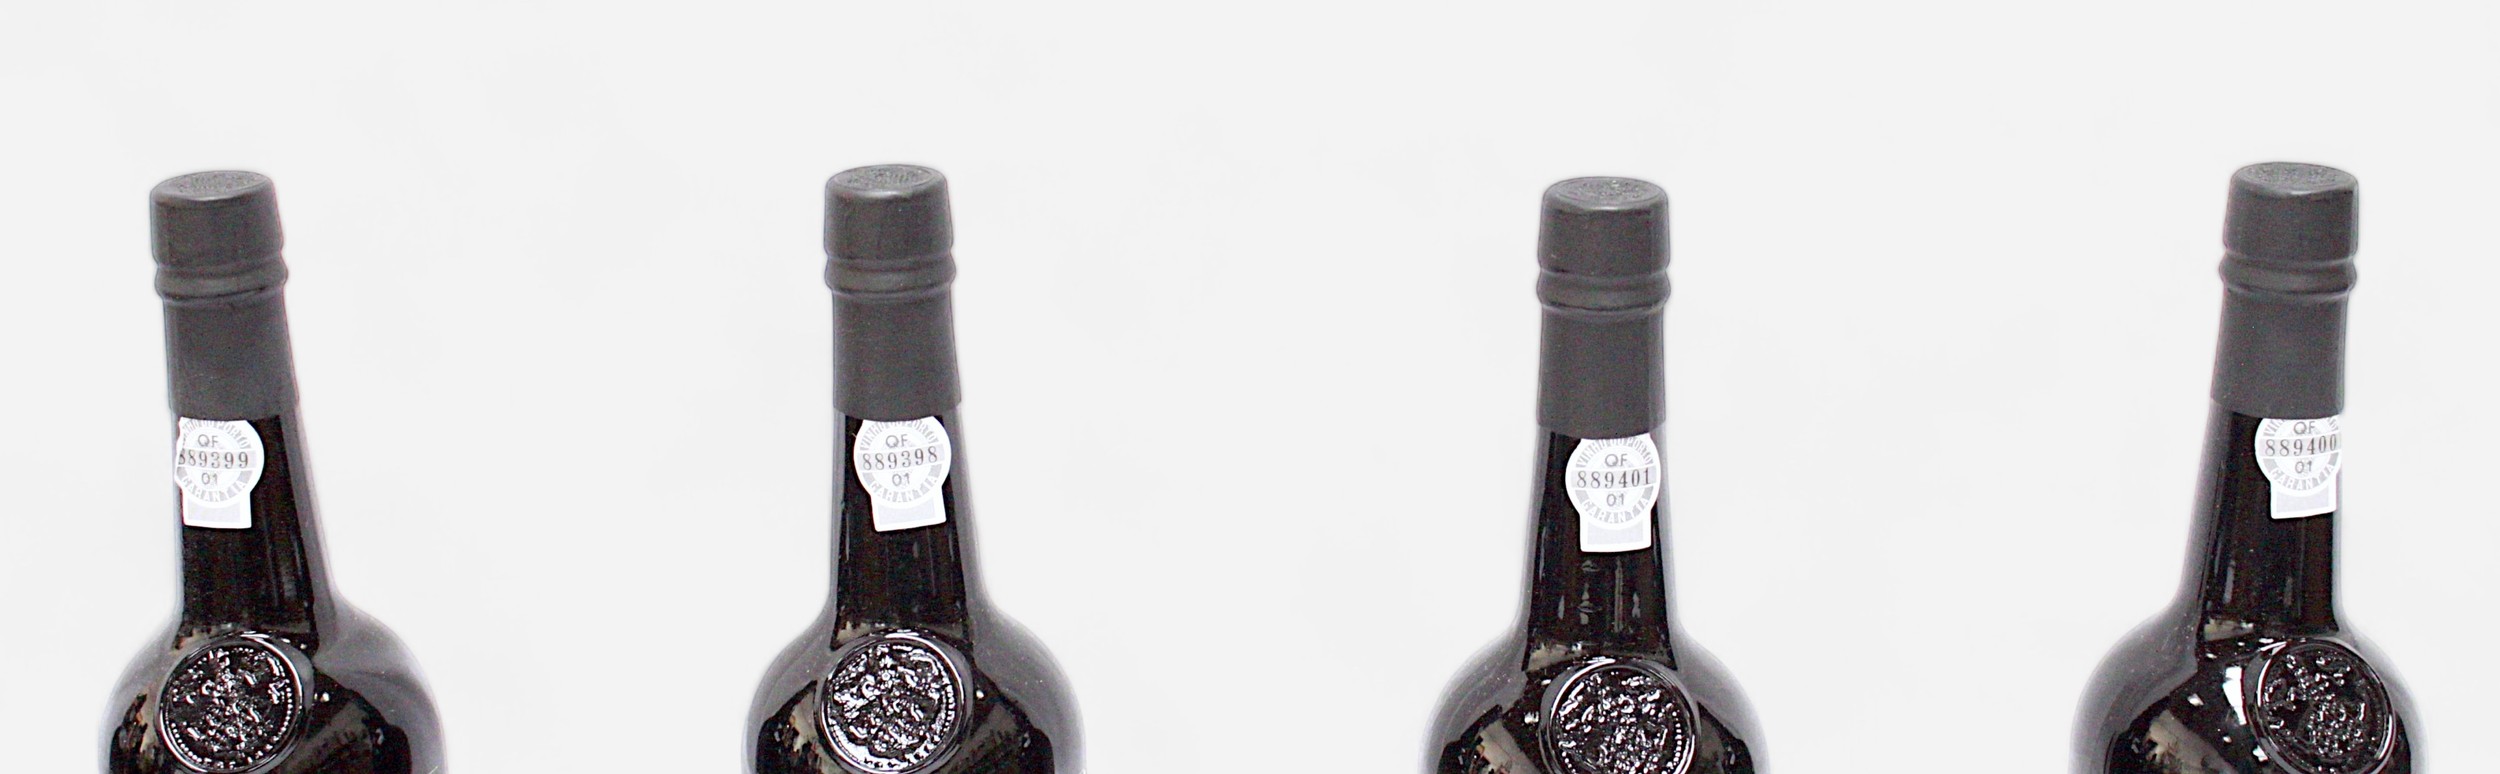 Nine bottles of Fonseca Vintage port, 1992 vintage, 20.5% vol, 75cl bottles, all sealed with labels - Image 3 of 7